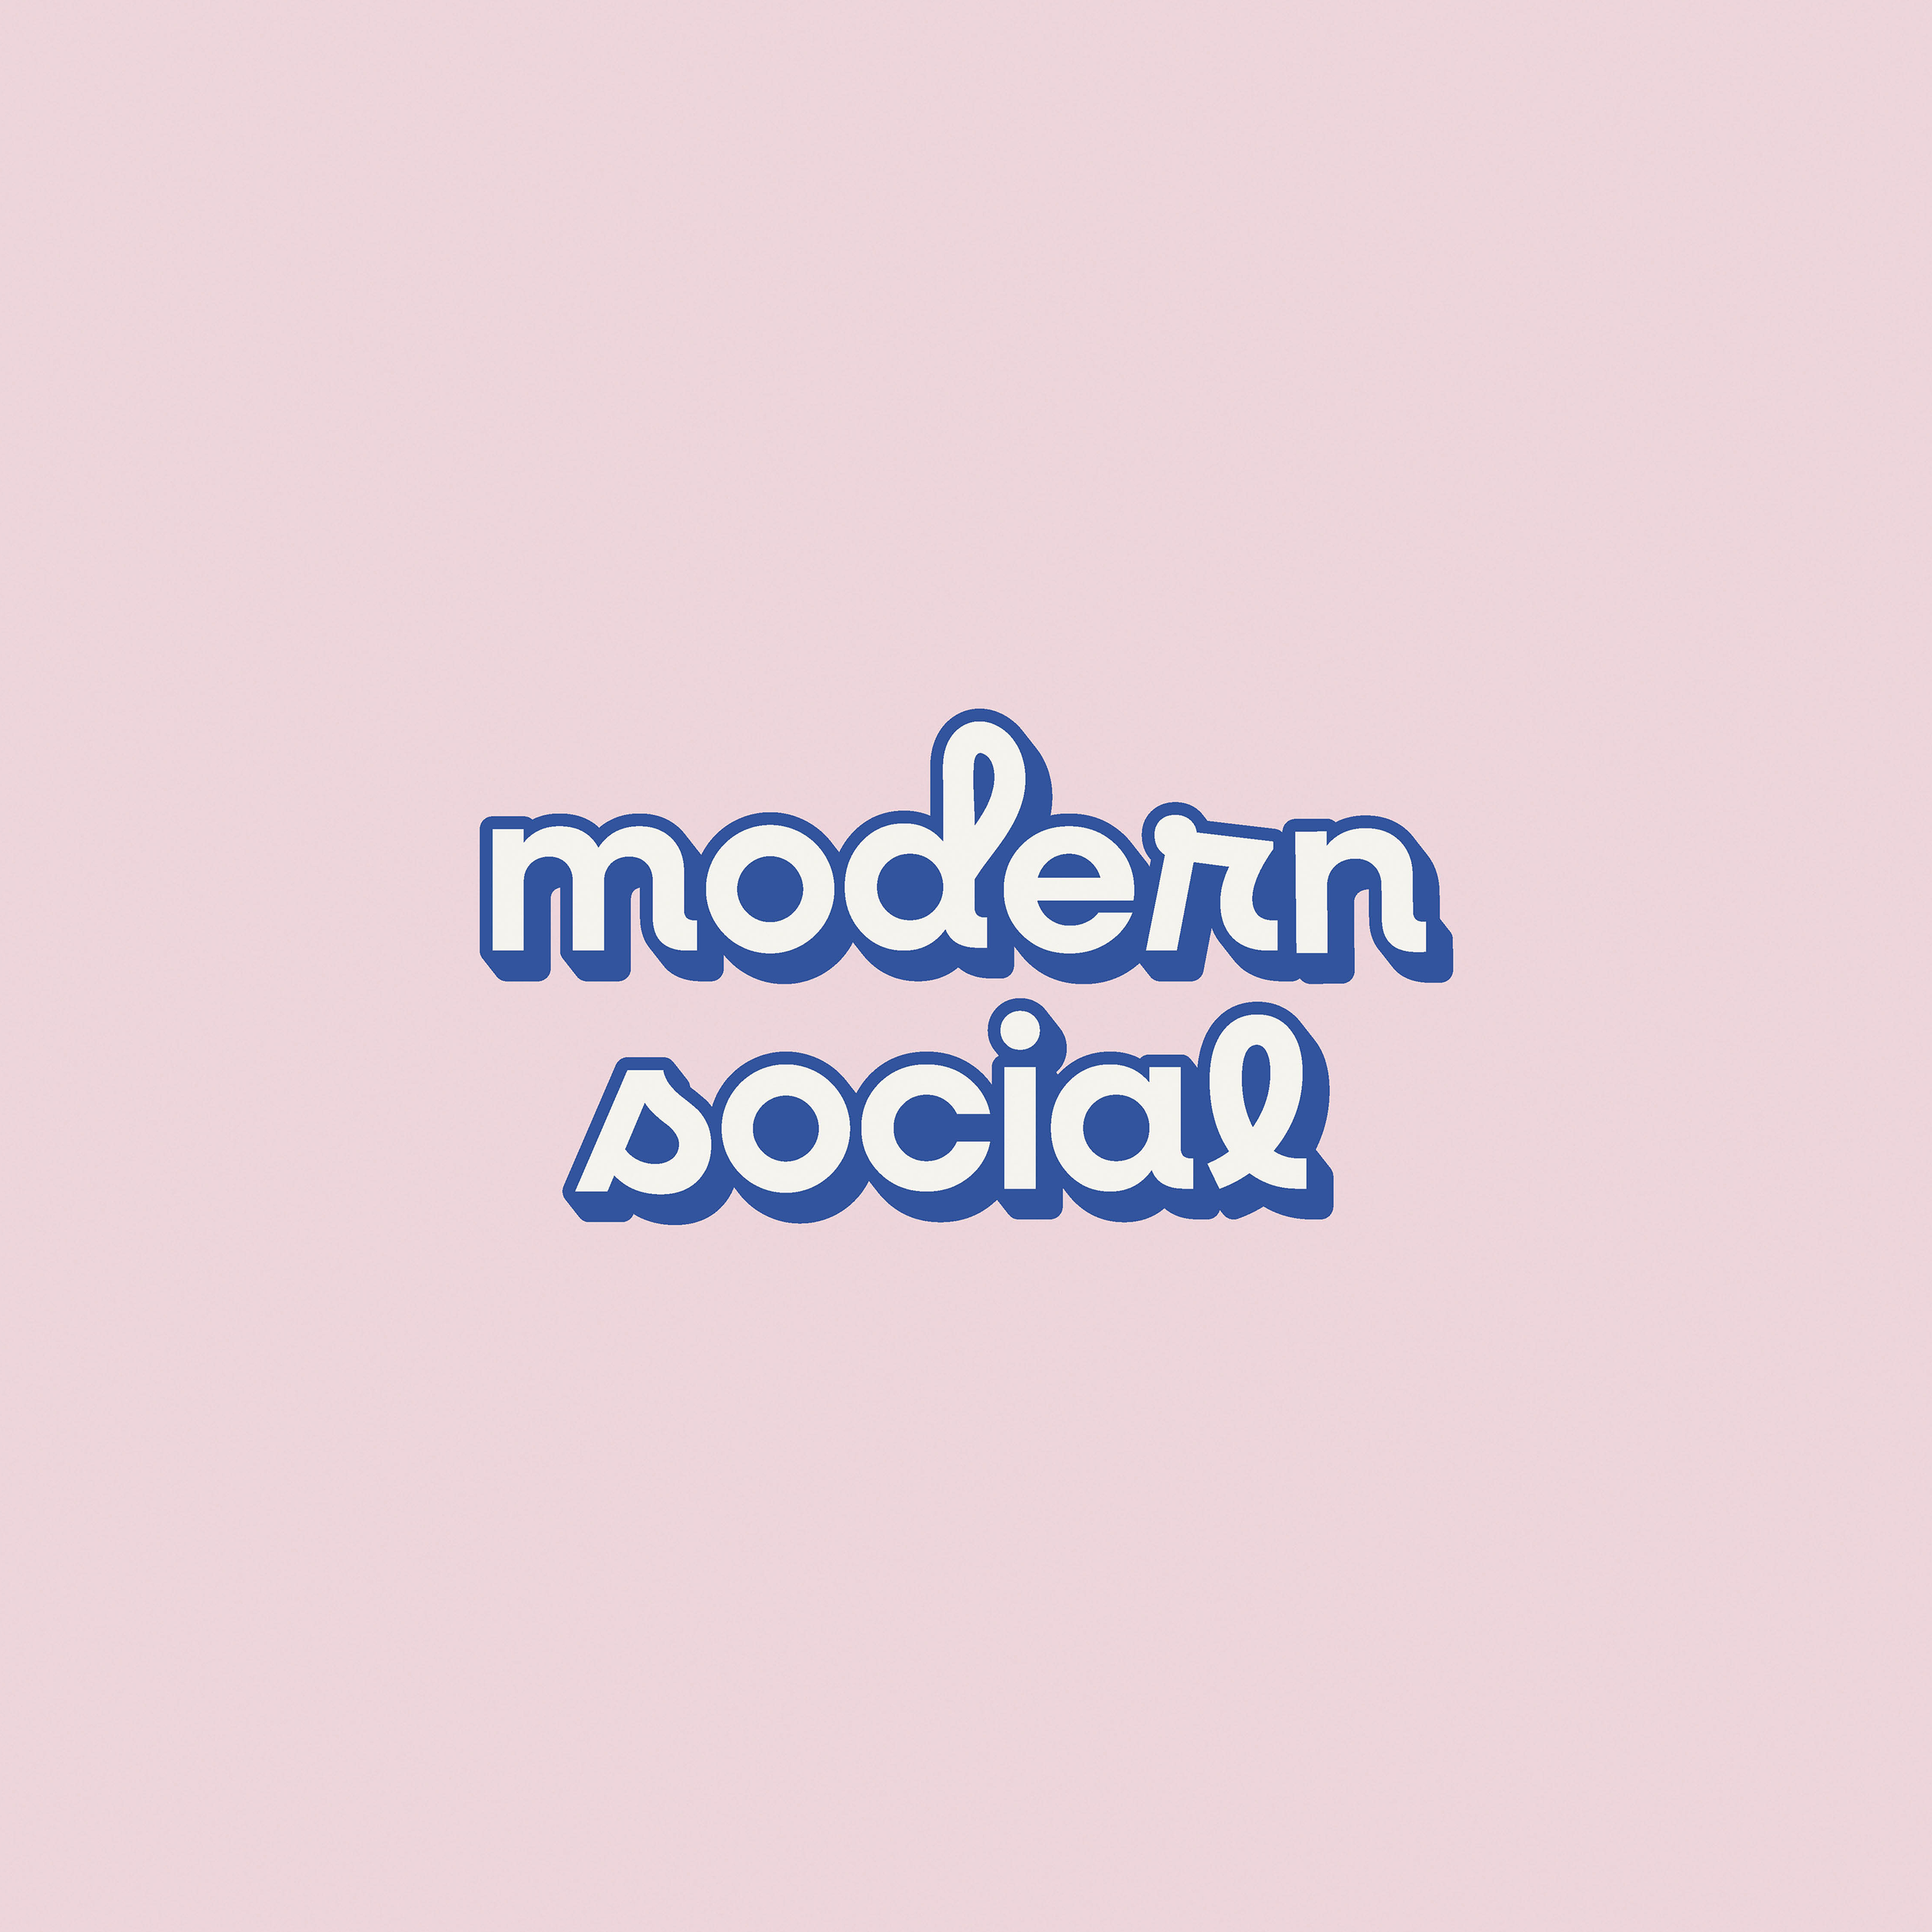 modernsocial-primarylogo.png